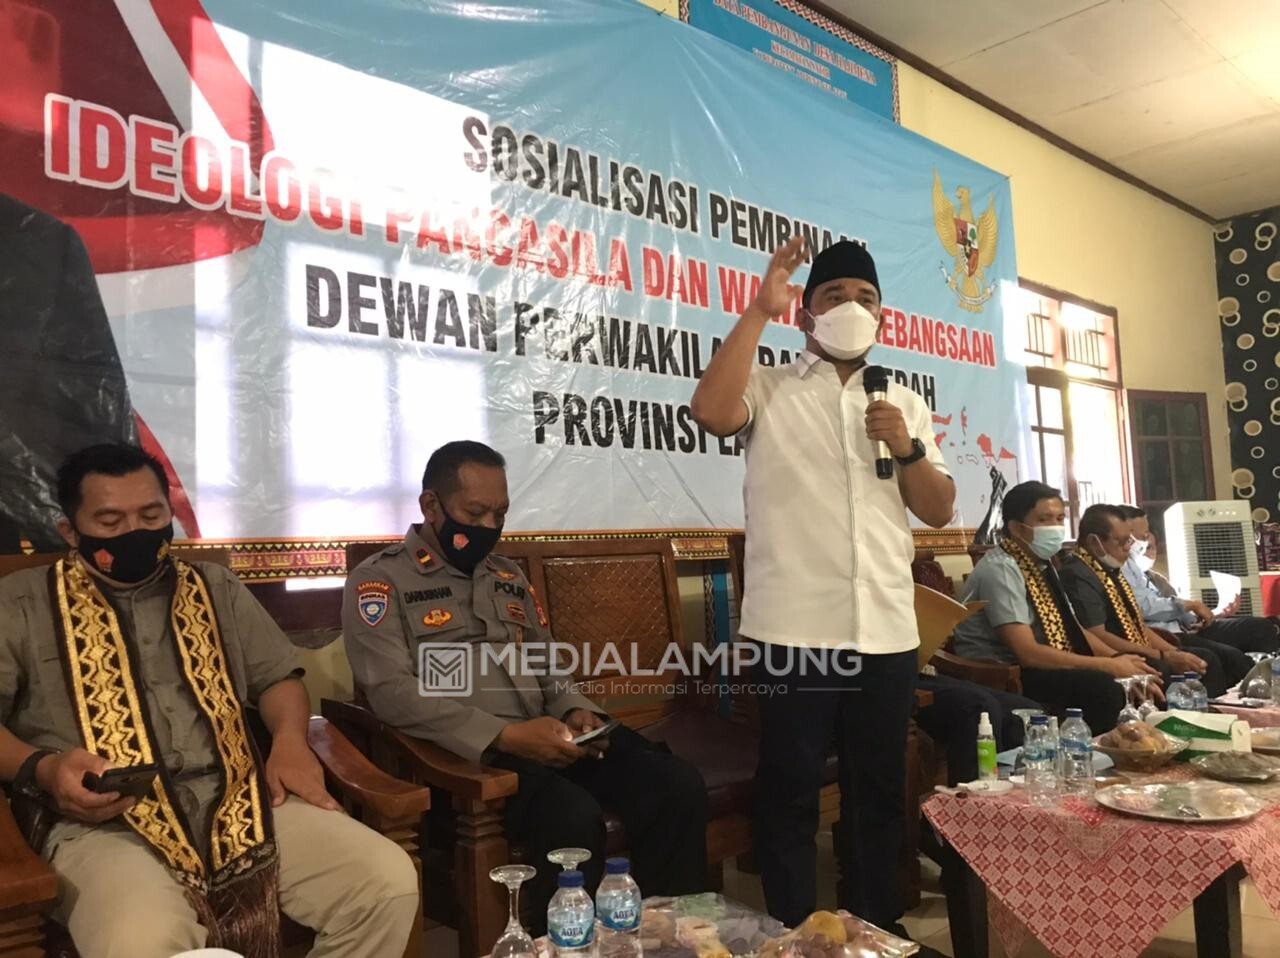 Wahrul Fauzi Silalahi Lakukan Sosialisasi Pembinaan Ideologi Pancasila Dan Wawasan Kebangsaan